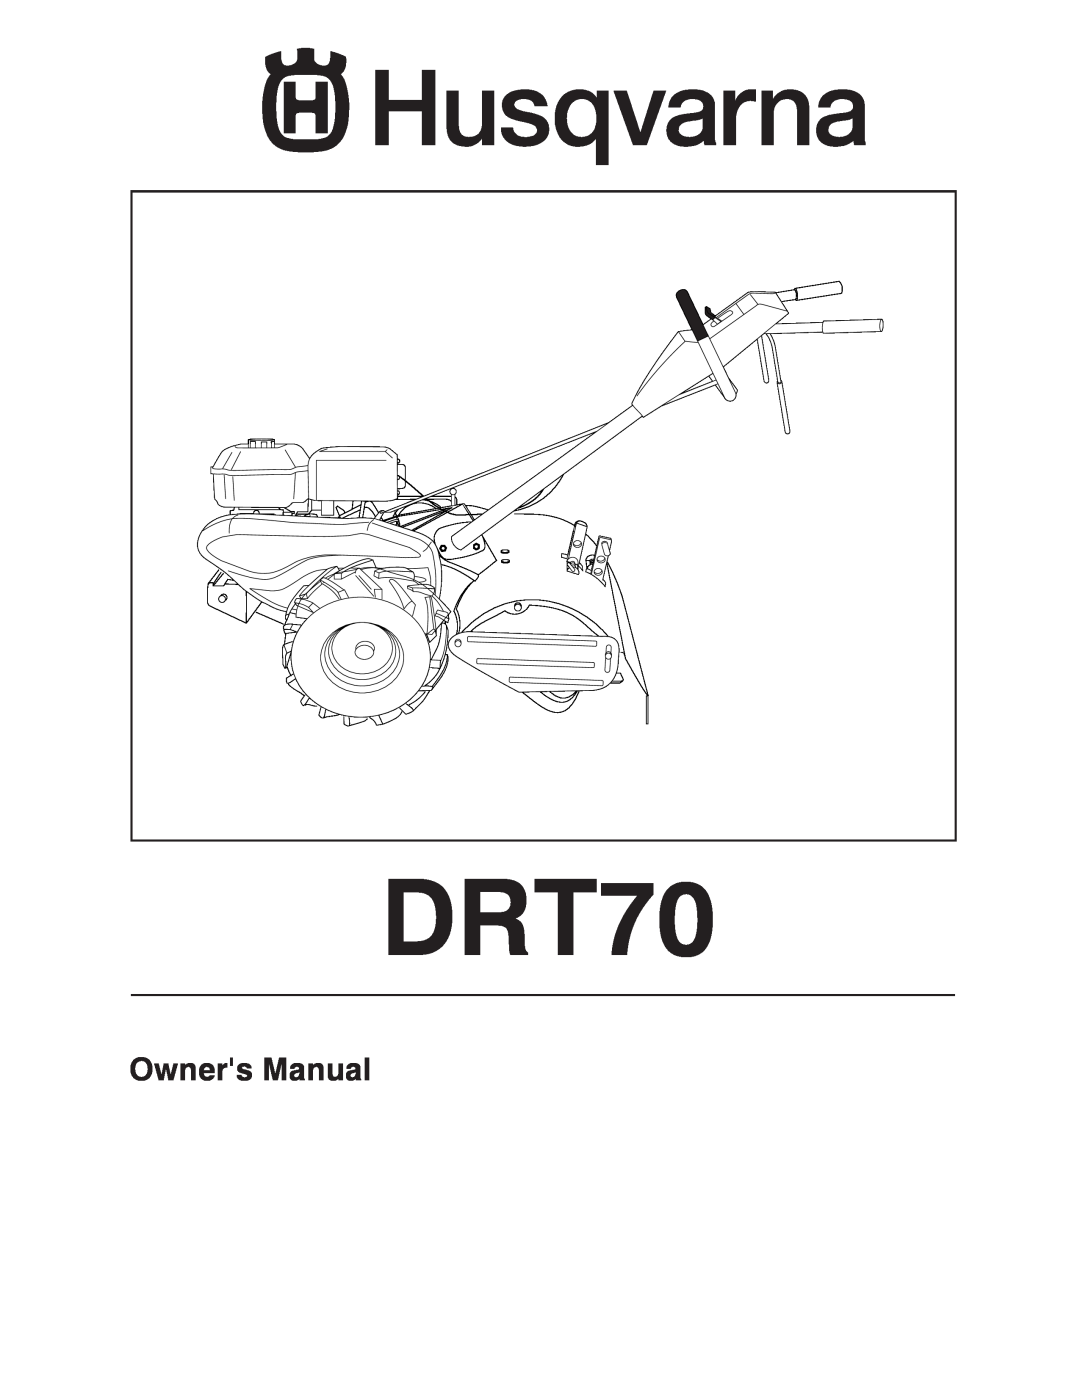 Husqvarna DRT70 owner manual Owners Manual 